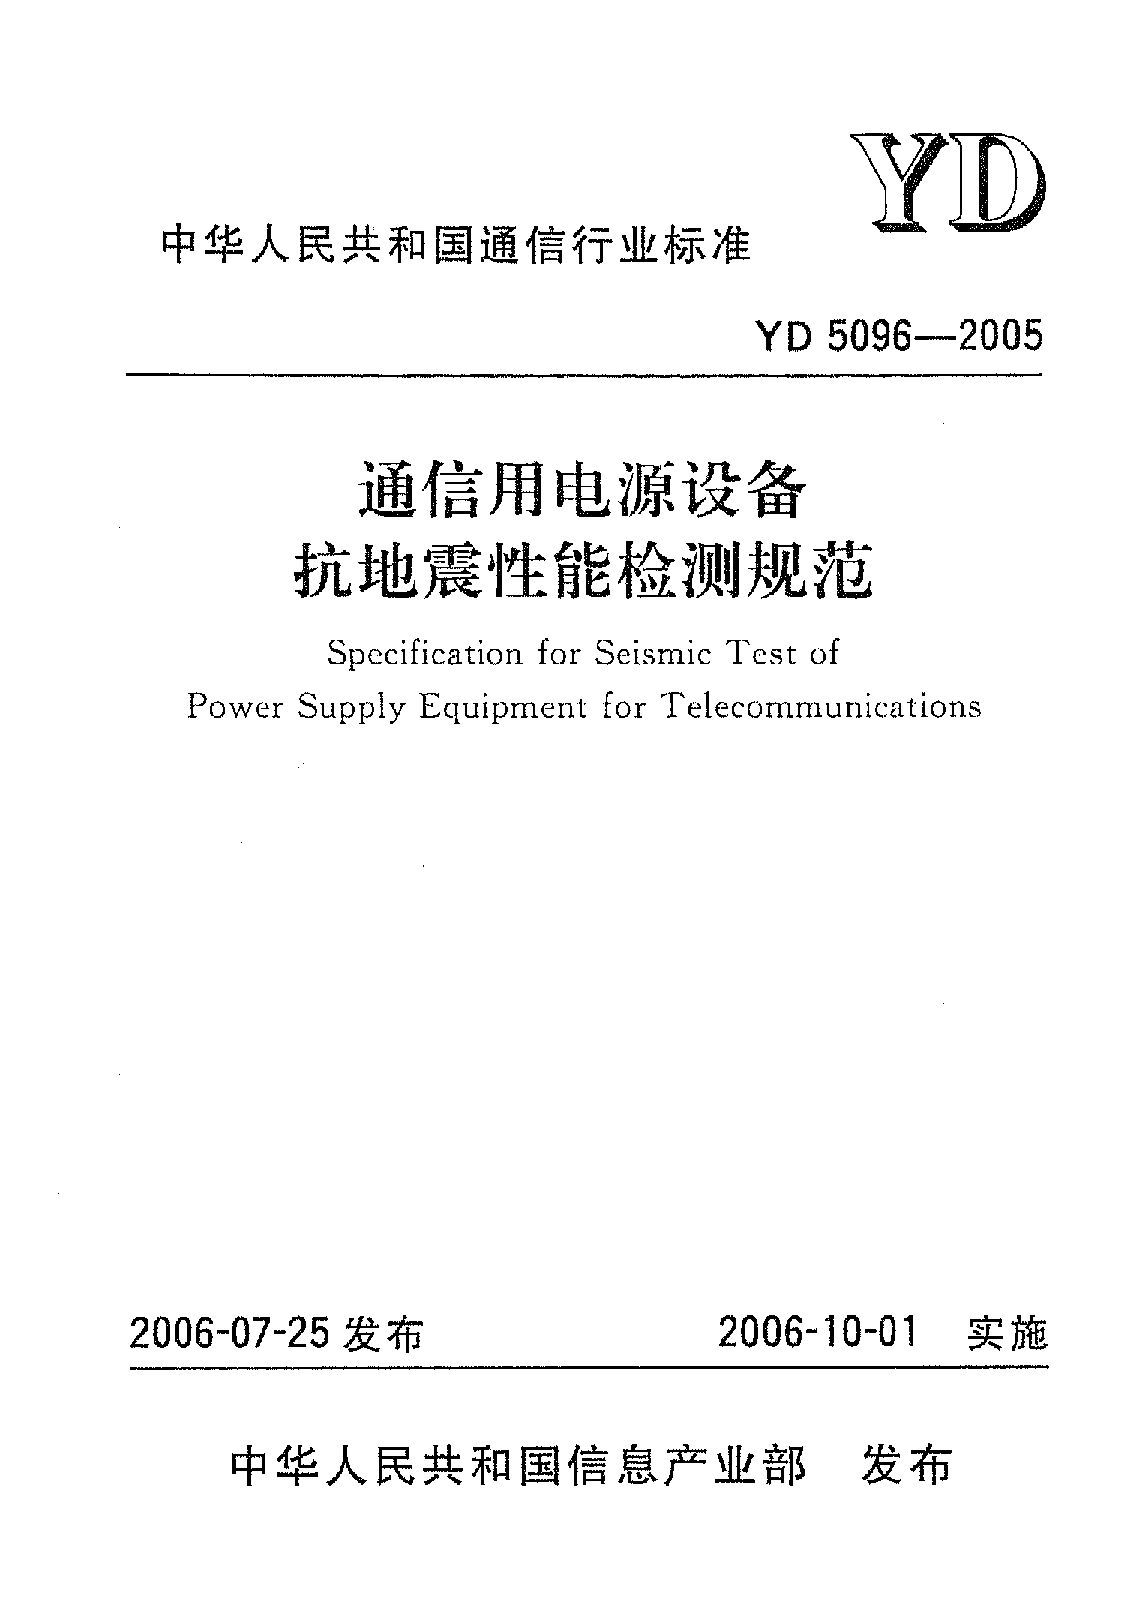 YD 5096-2005